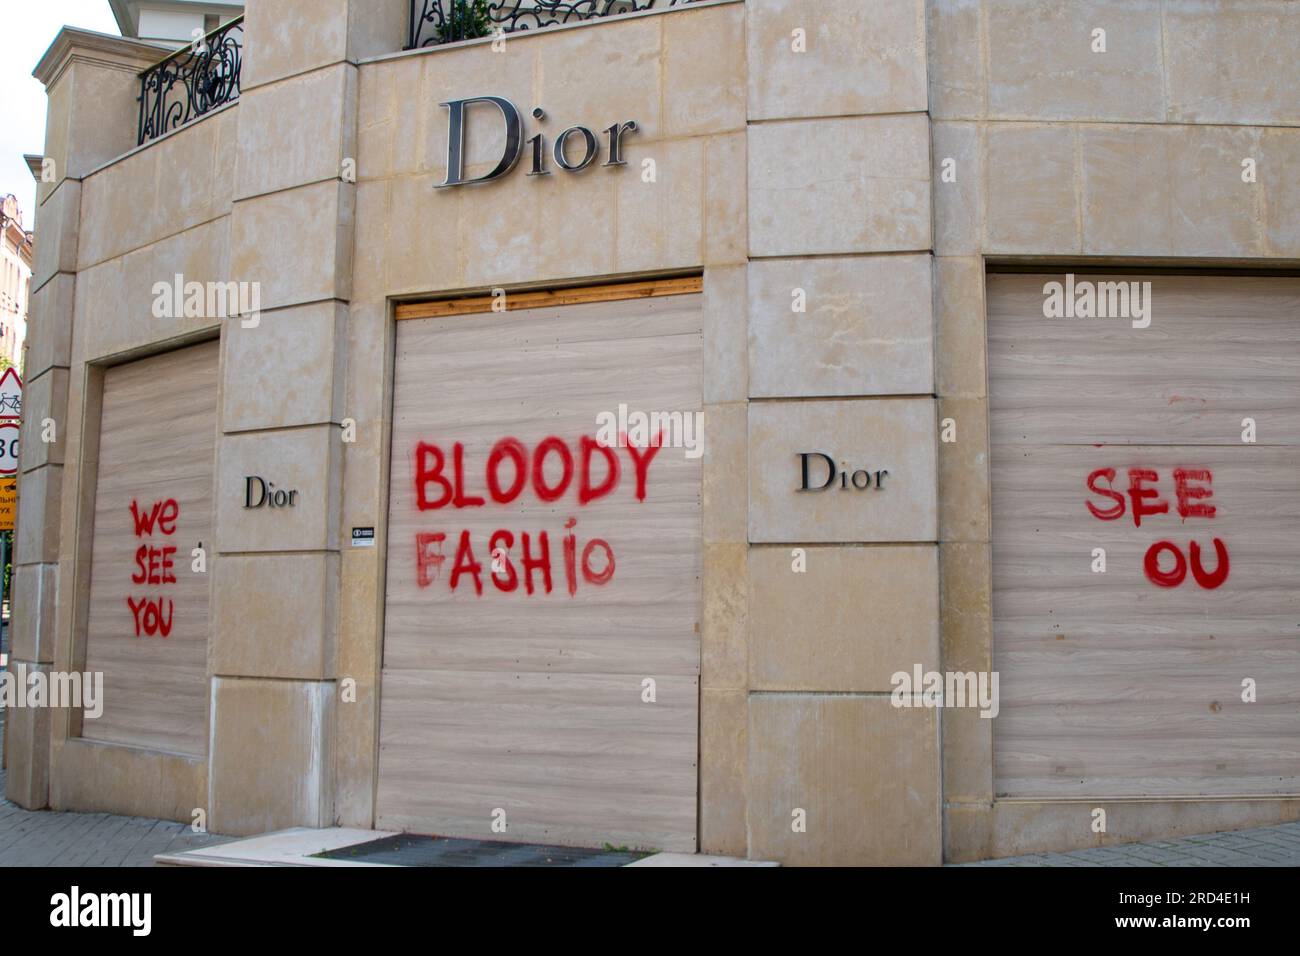 Enseigne logo de la société DIOR sur le magasin. Bloody Fashon  l'inscription sur les fenêtres fini avec des planches. Peinture rouge en  aérosol sur le mur.Kyiv, Ukraine - 15 juillet 2023 Photo